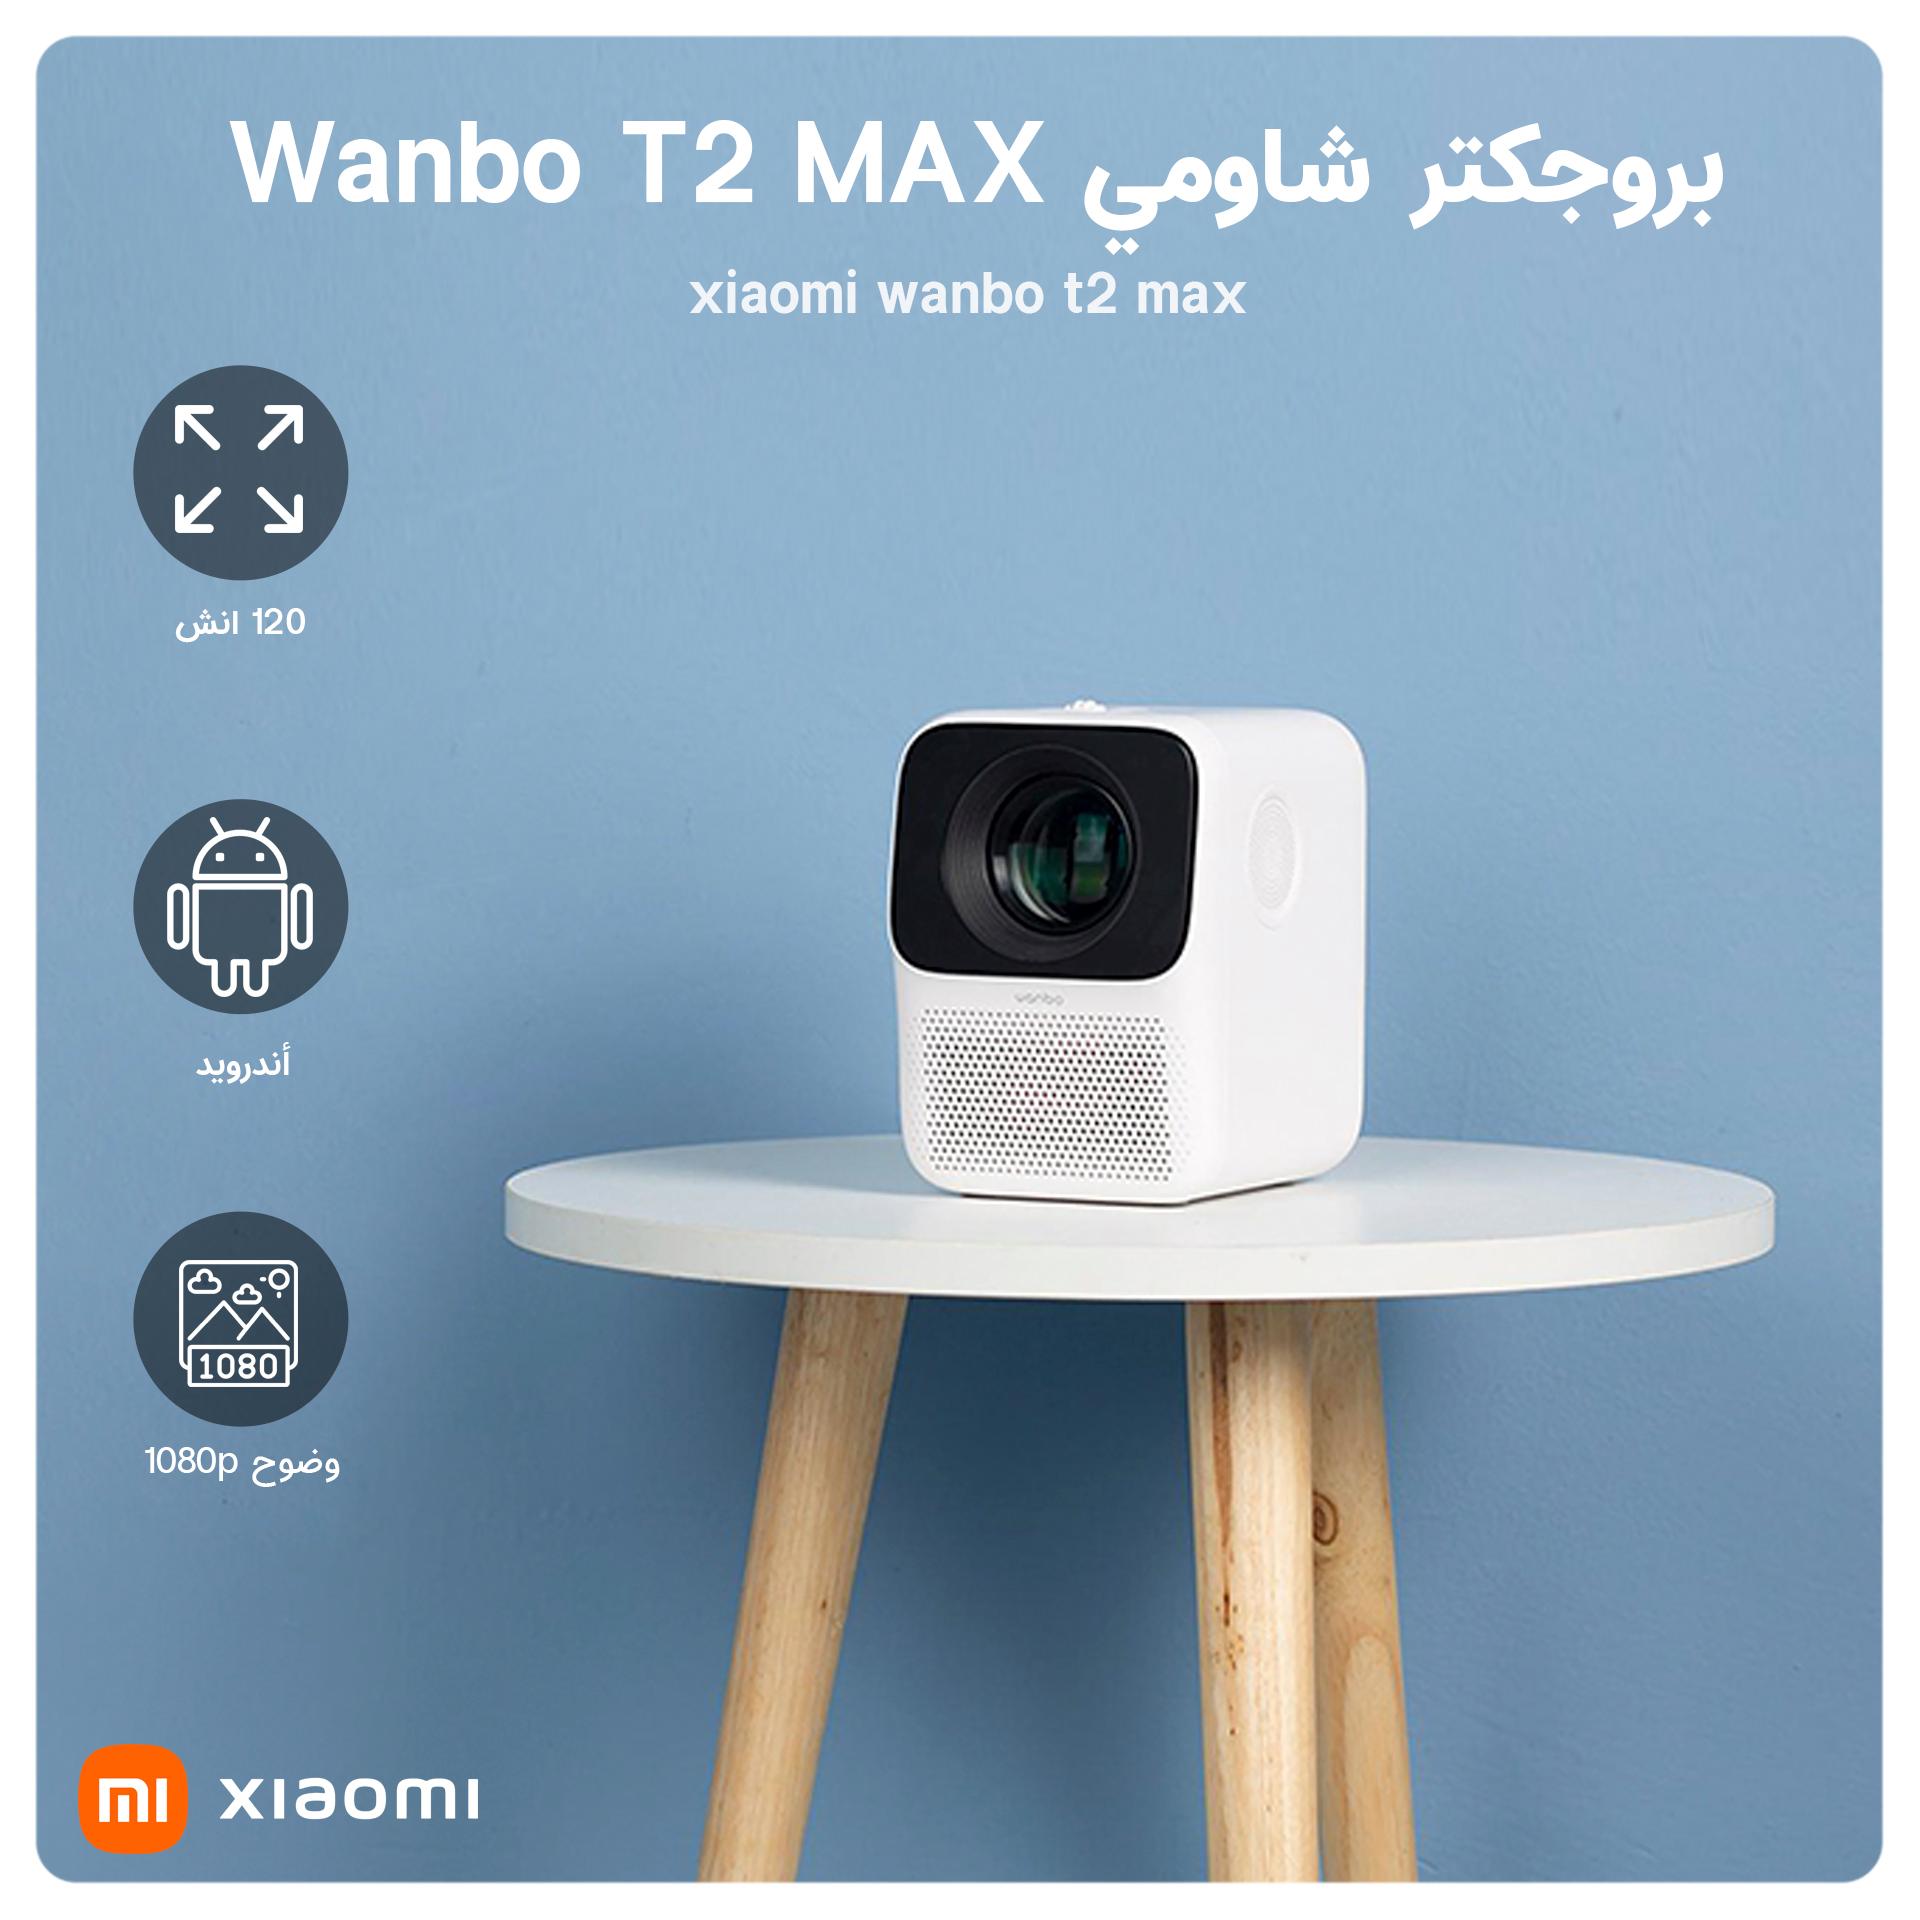 بروجكتر منزلي أندرويد 250 لومن Wanbo T2 MAX بدقة 1080P